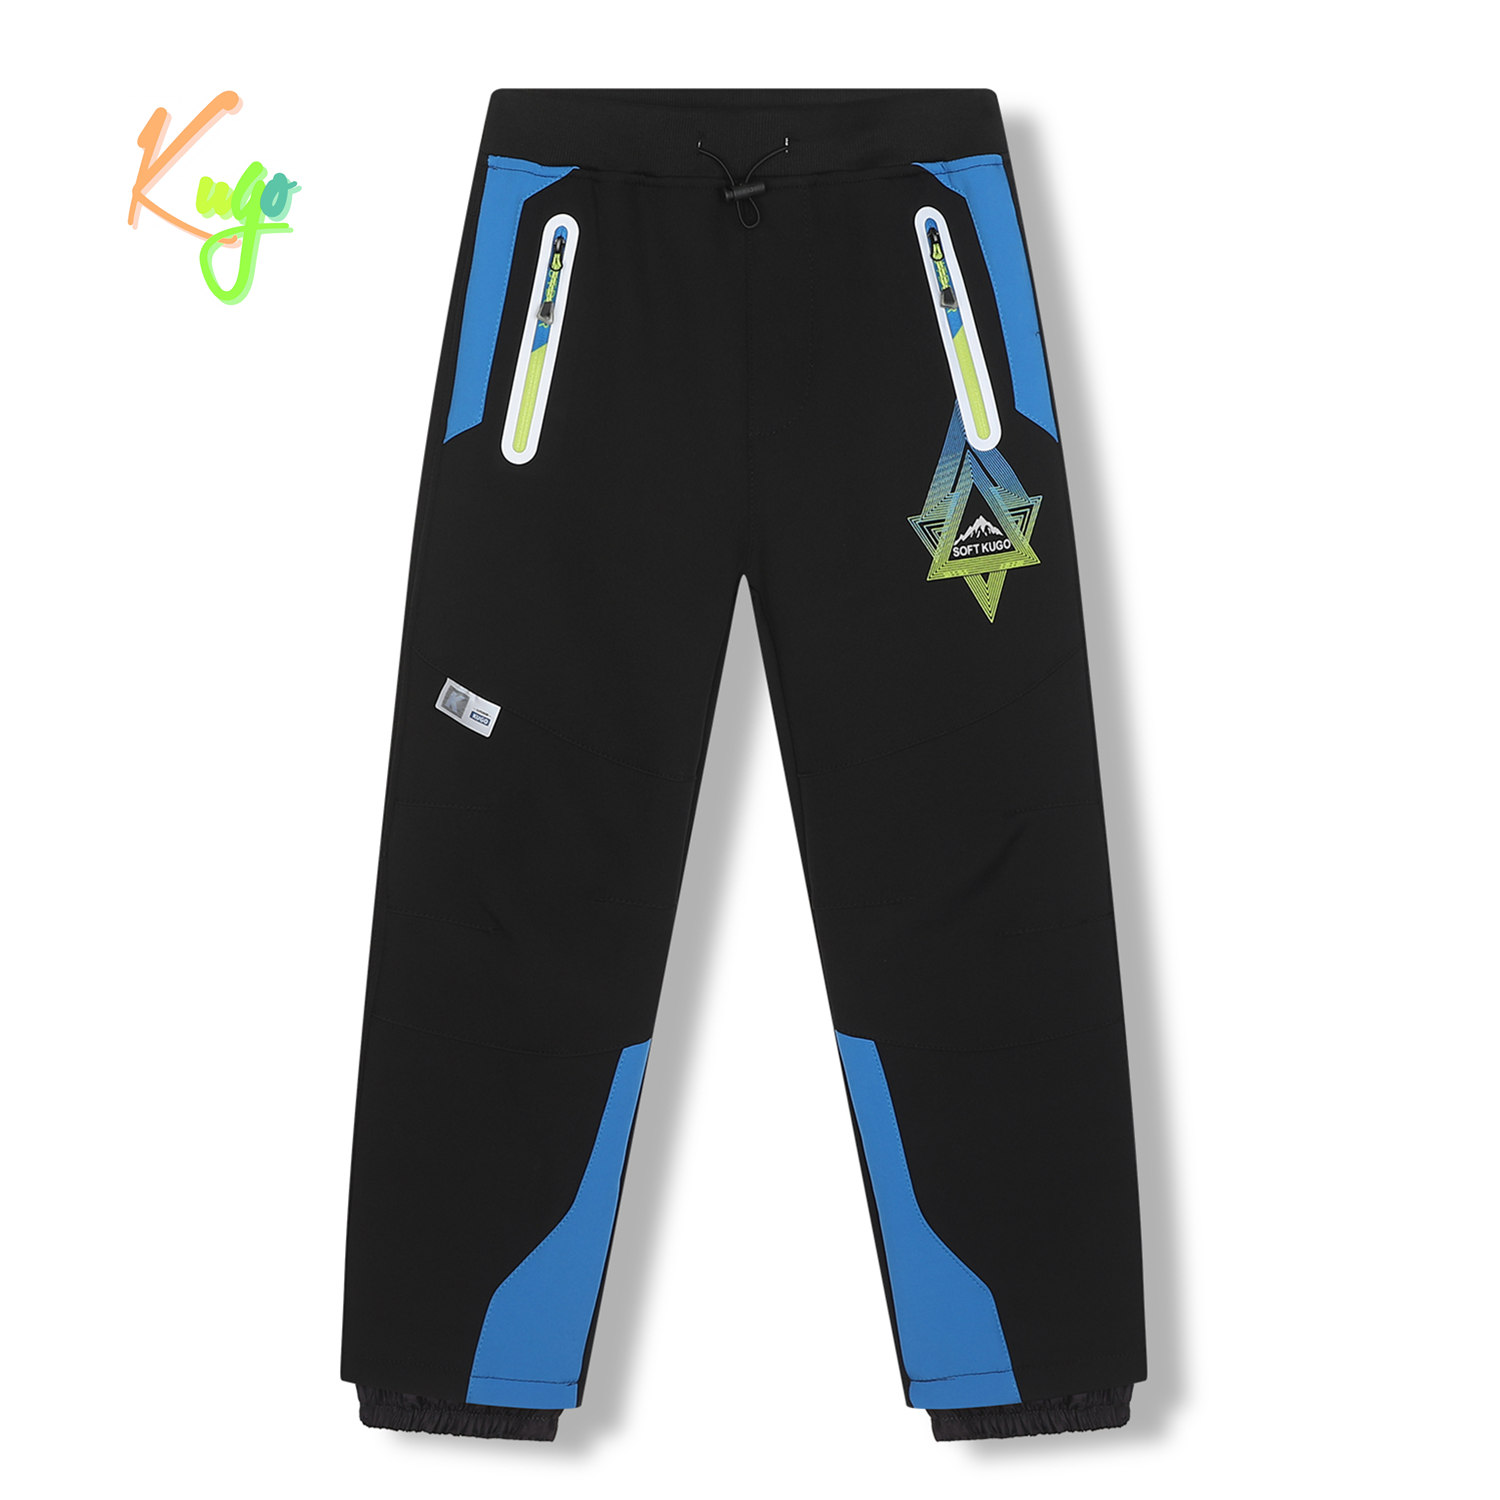 Chlapecké softshellové kalhoty, zateplené - KUGO HK5620, černá / modrá aplikace Barva: Černá, Velikost: 134